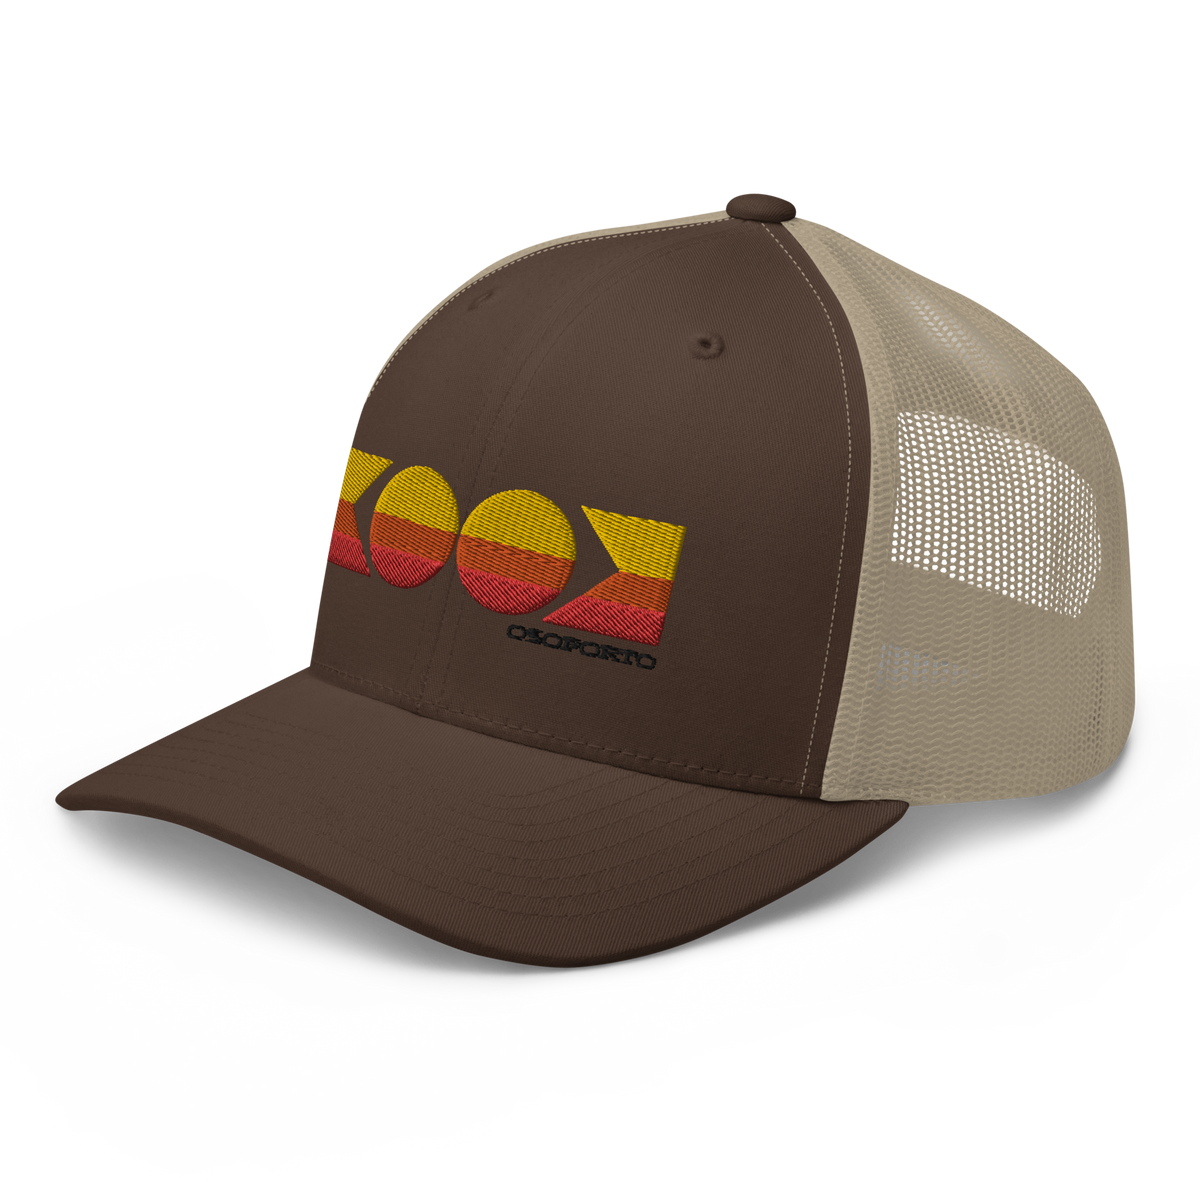 Kook Retro Trucker Hat from OsoPorto